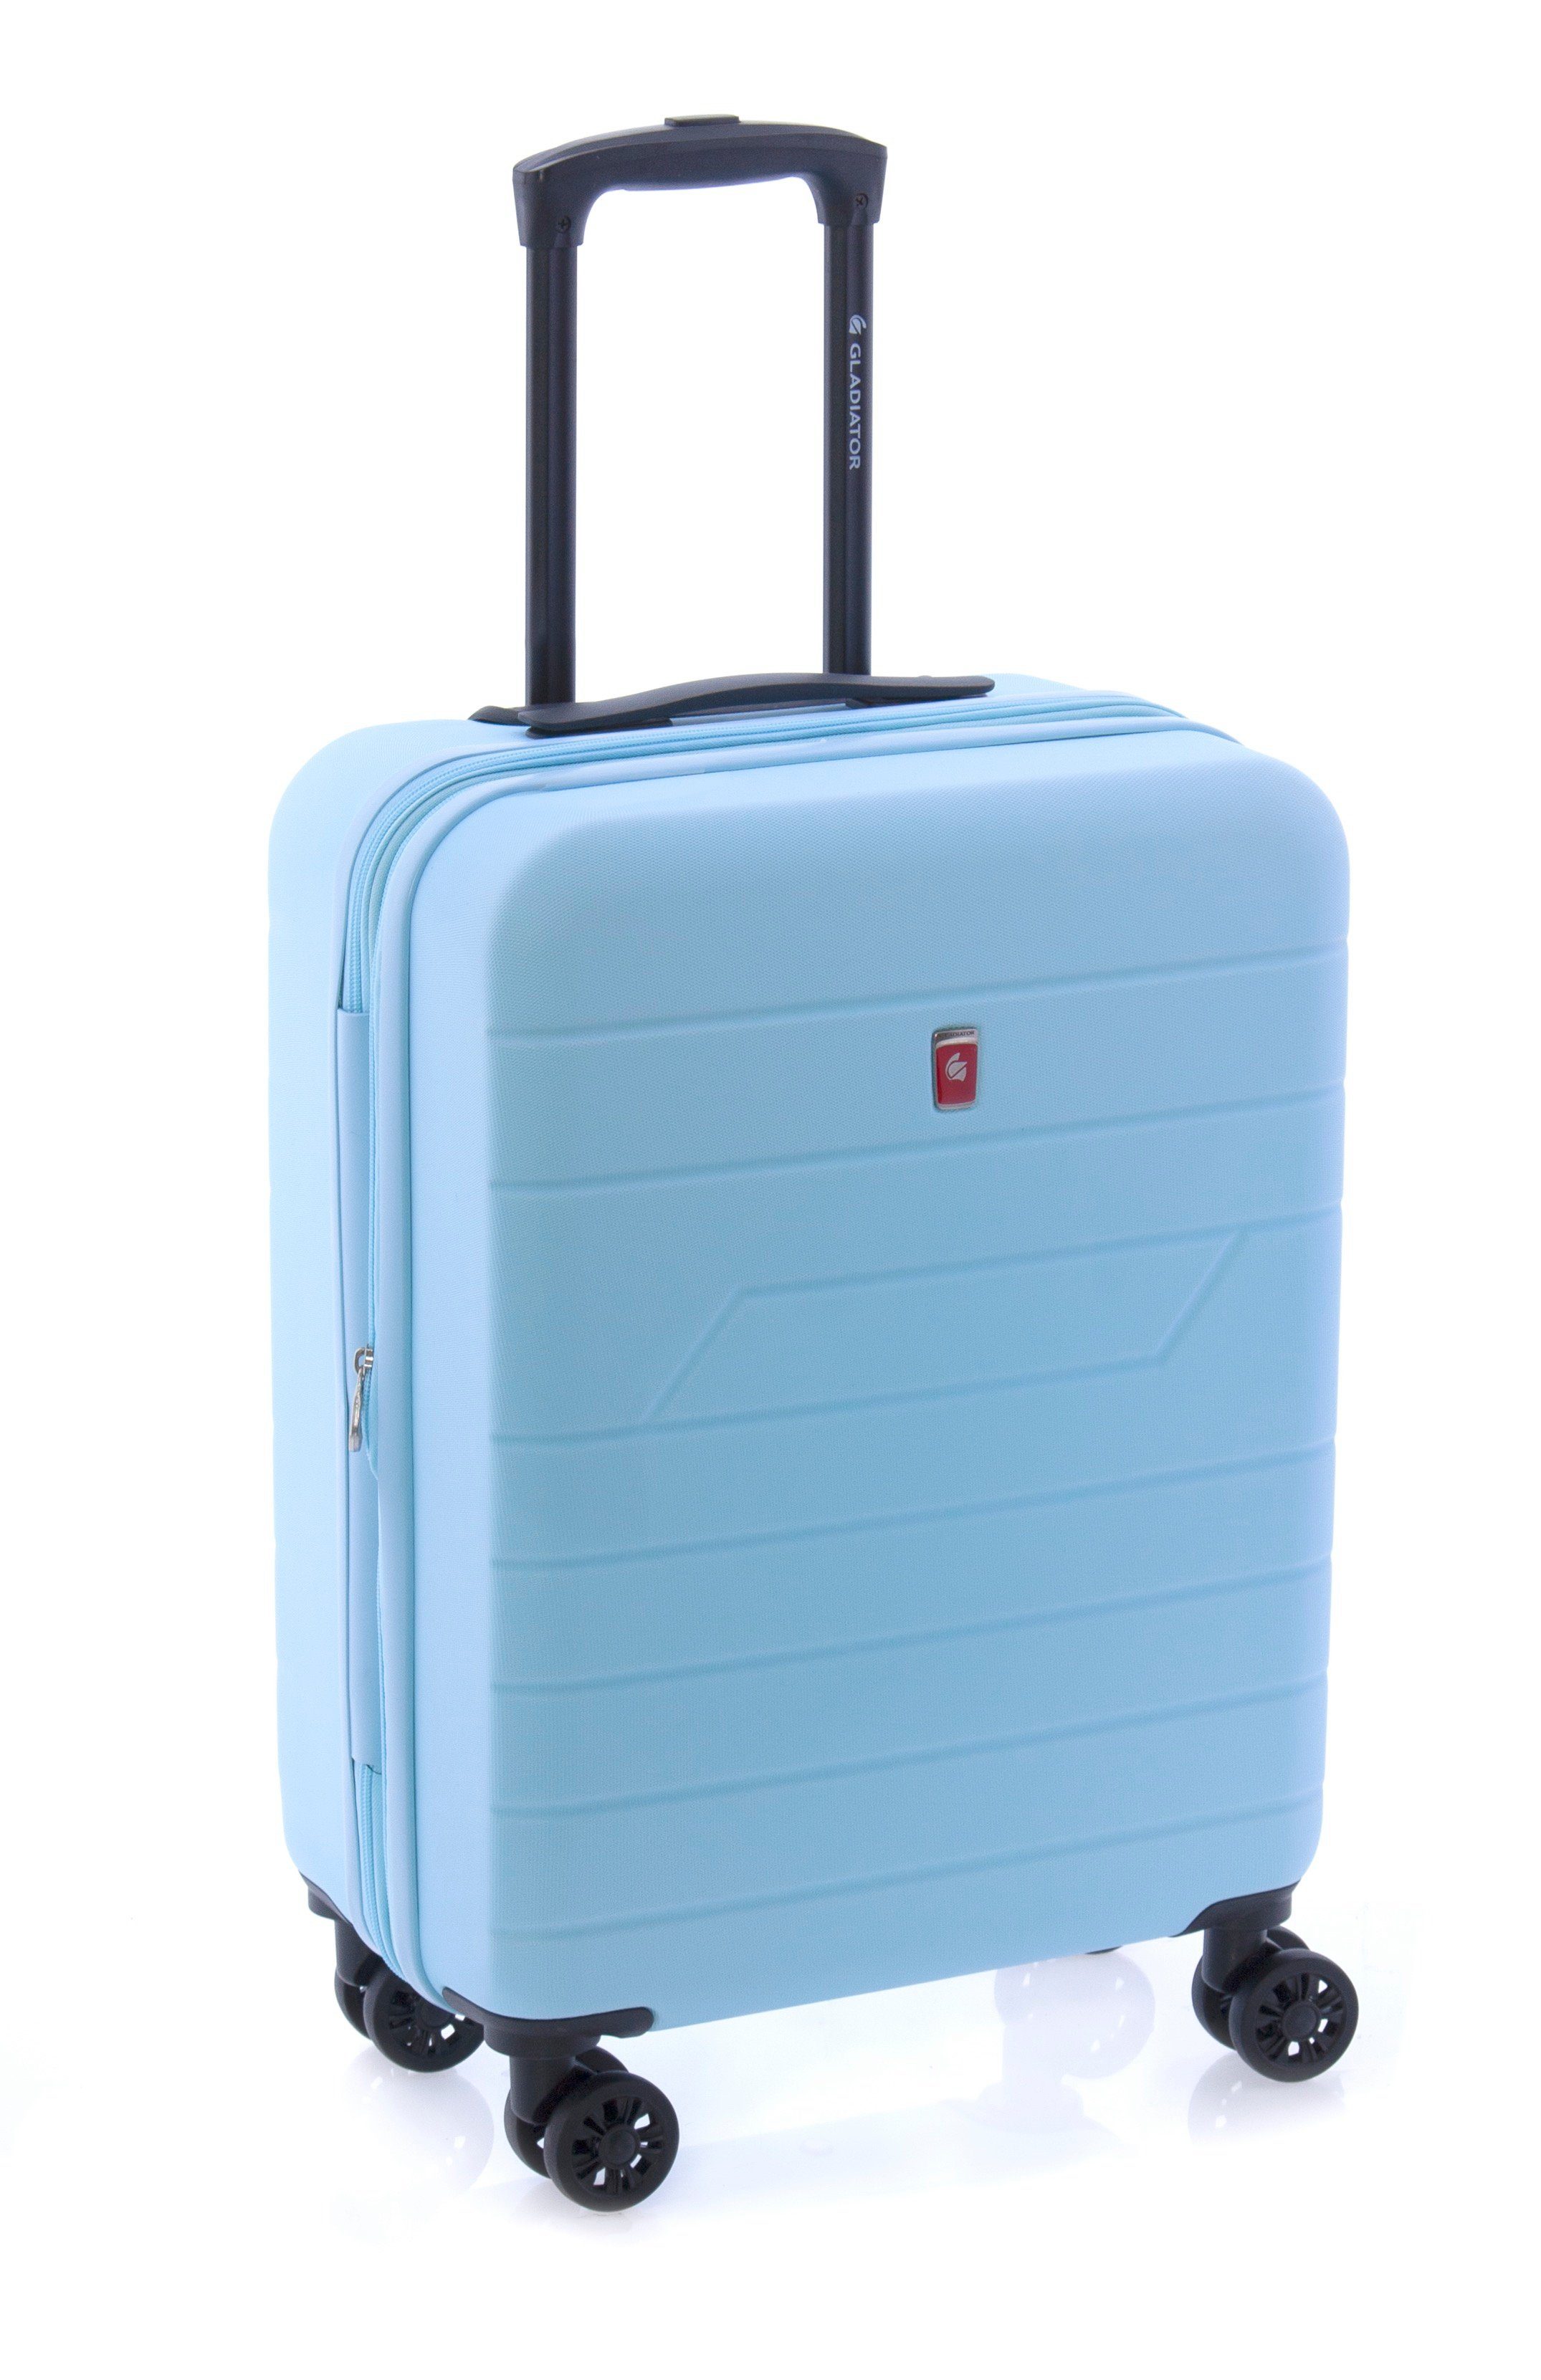 GLADIATOR Handgepäck-Trolley Koffer - 55 cm, Volumen: 36/40 Liter, 4 Rollen, TSA-Schloss, Dehnfalte, Farben: blau, schwarz, rot, hellblau, minzgrün, gelb